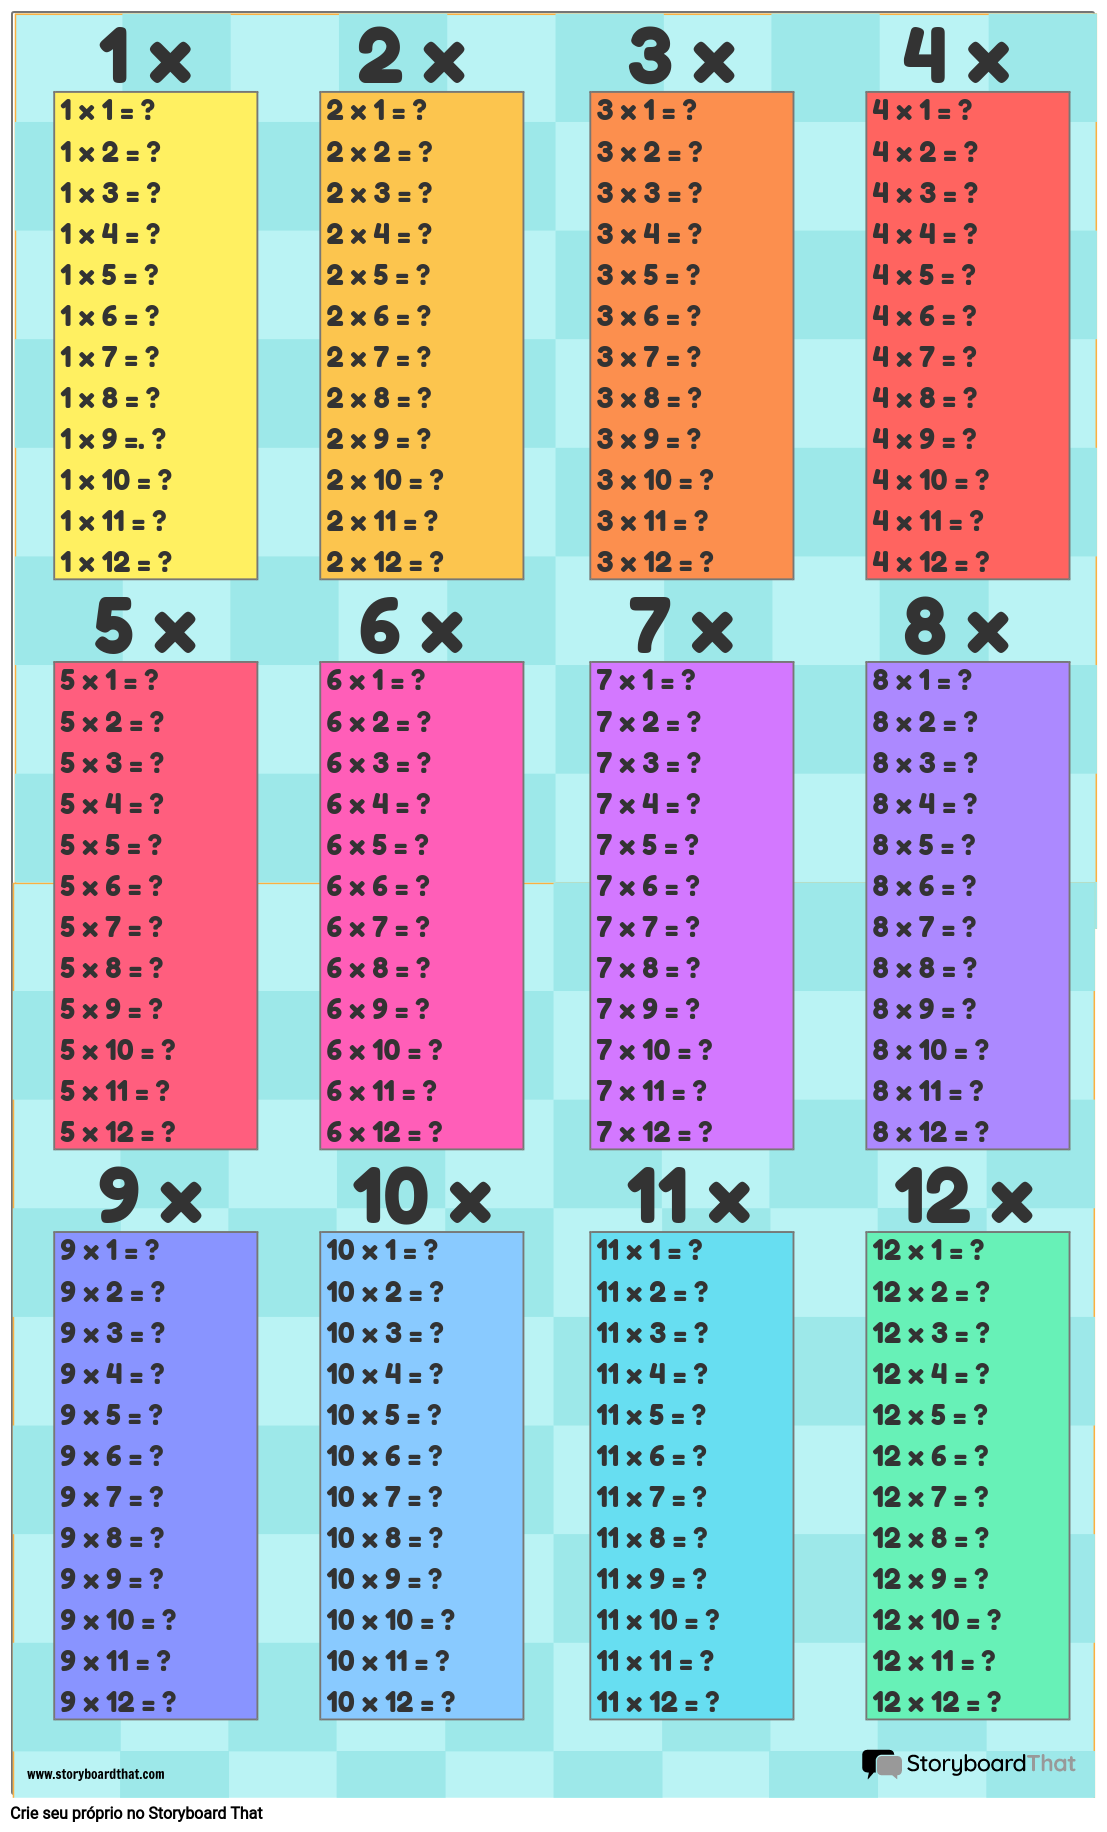 Modelo de Tabela de Multiplicação 2